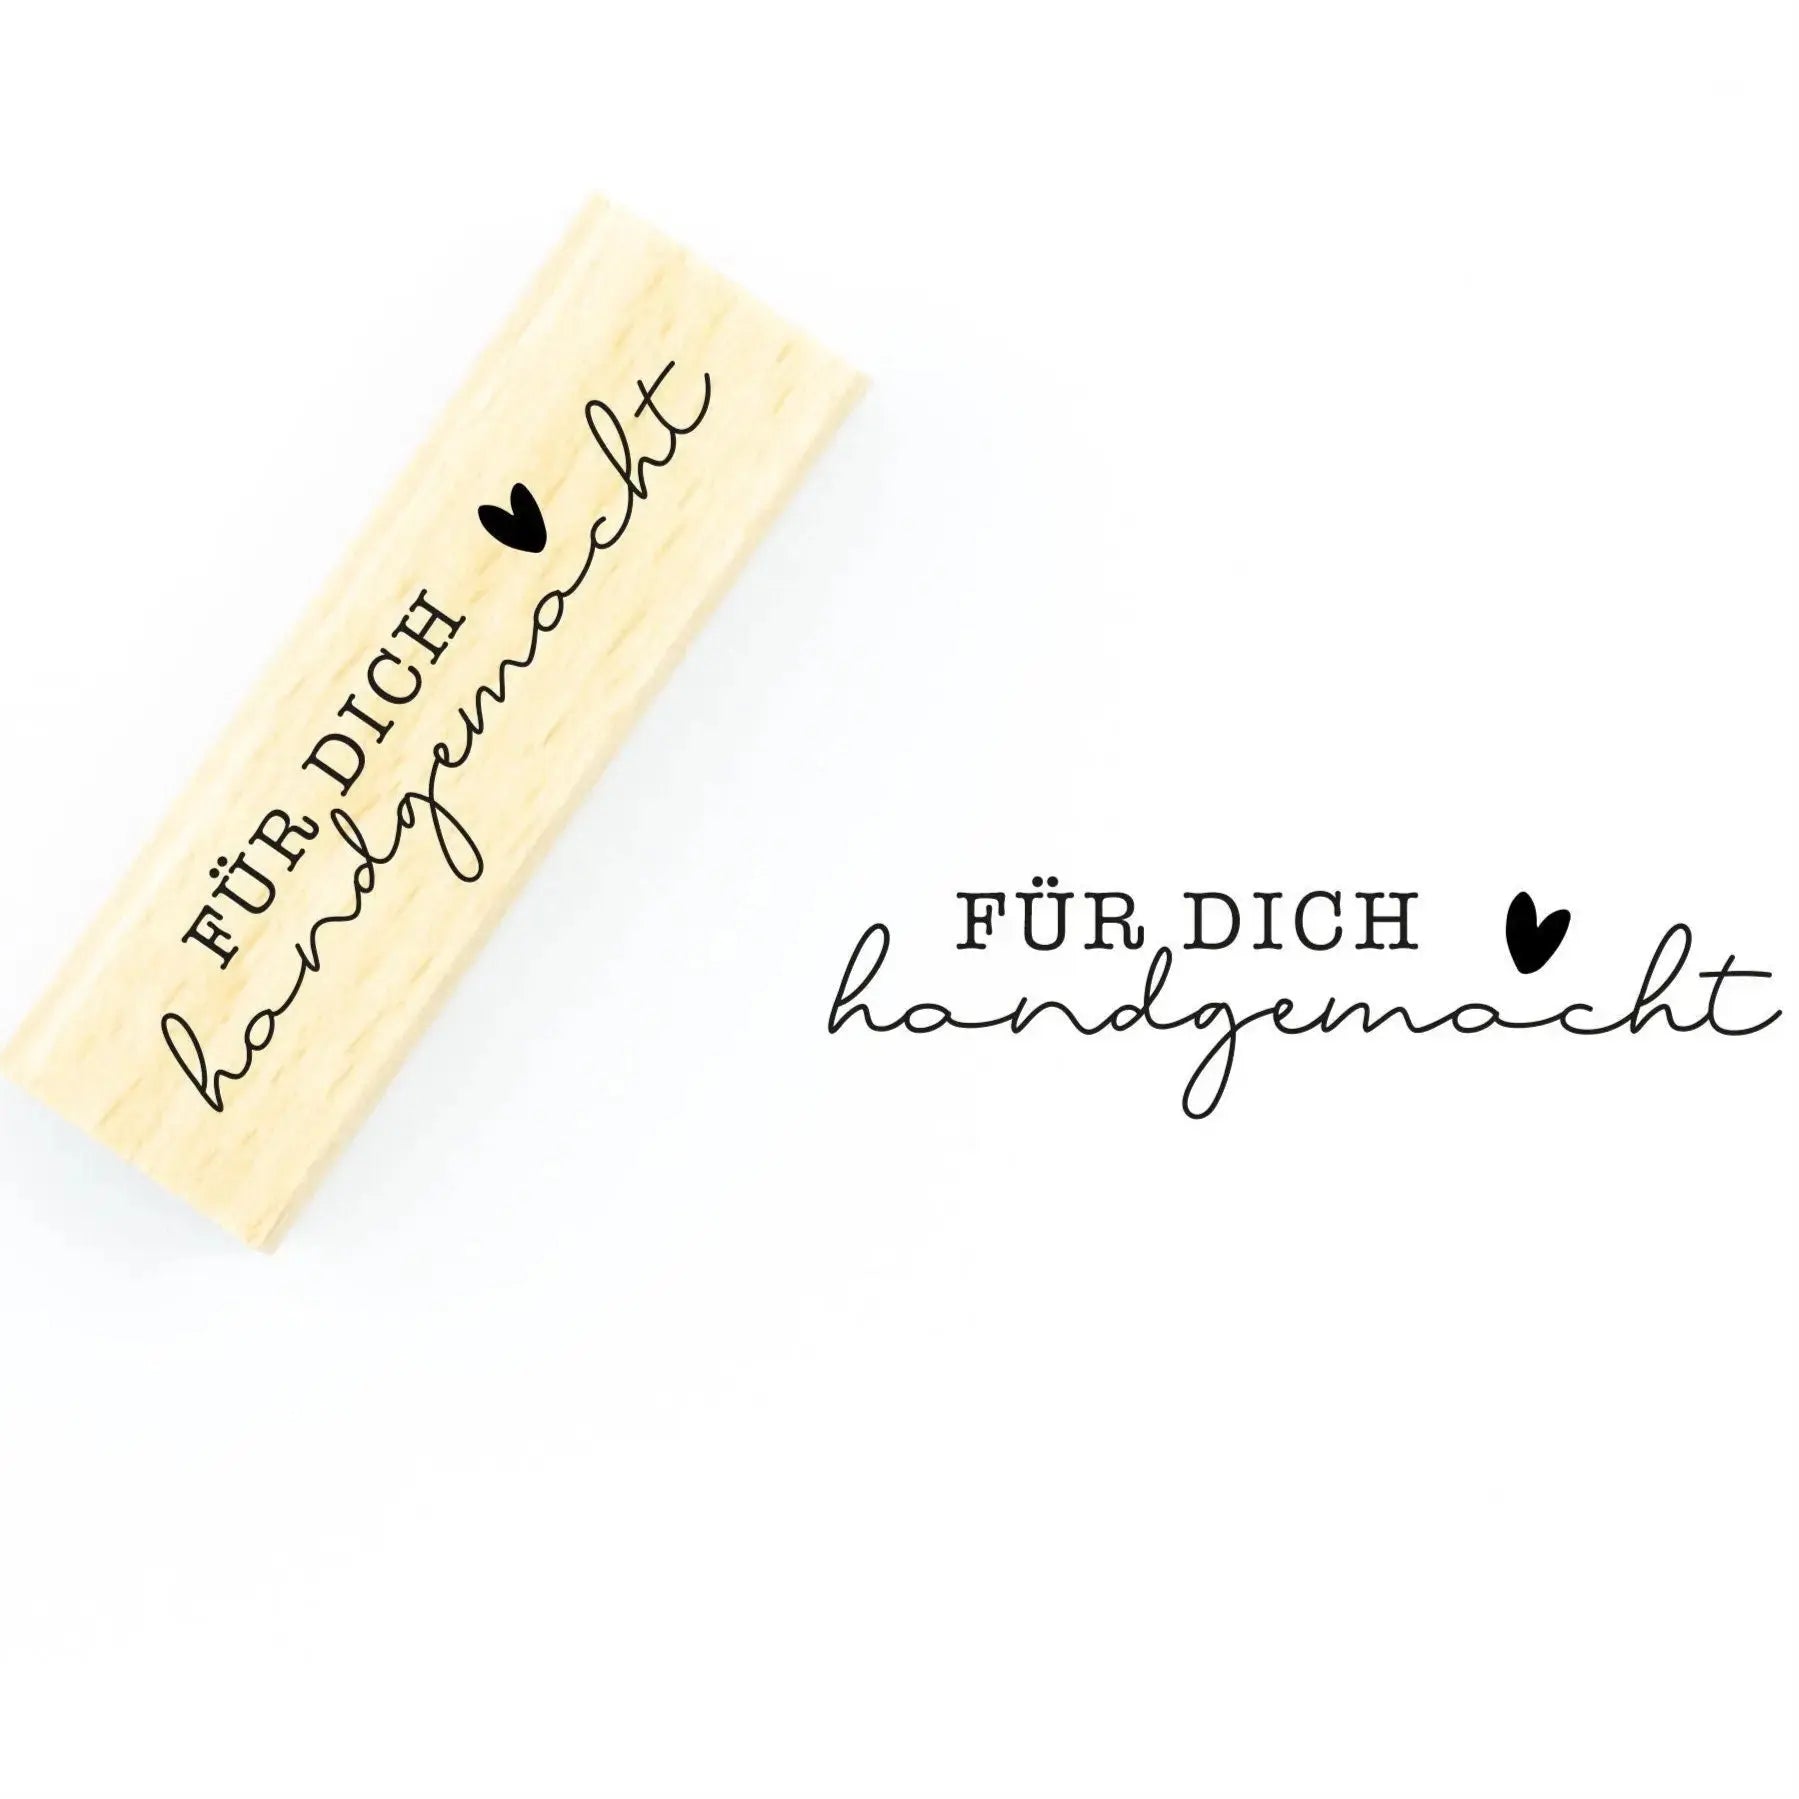 Stempel "Für Dich handgemacht" - IN LOVE WITH PAPER